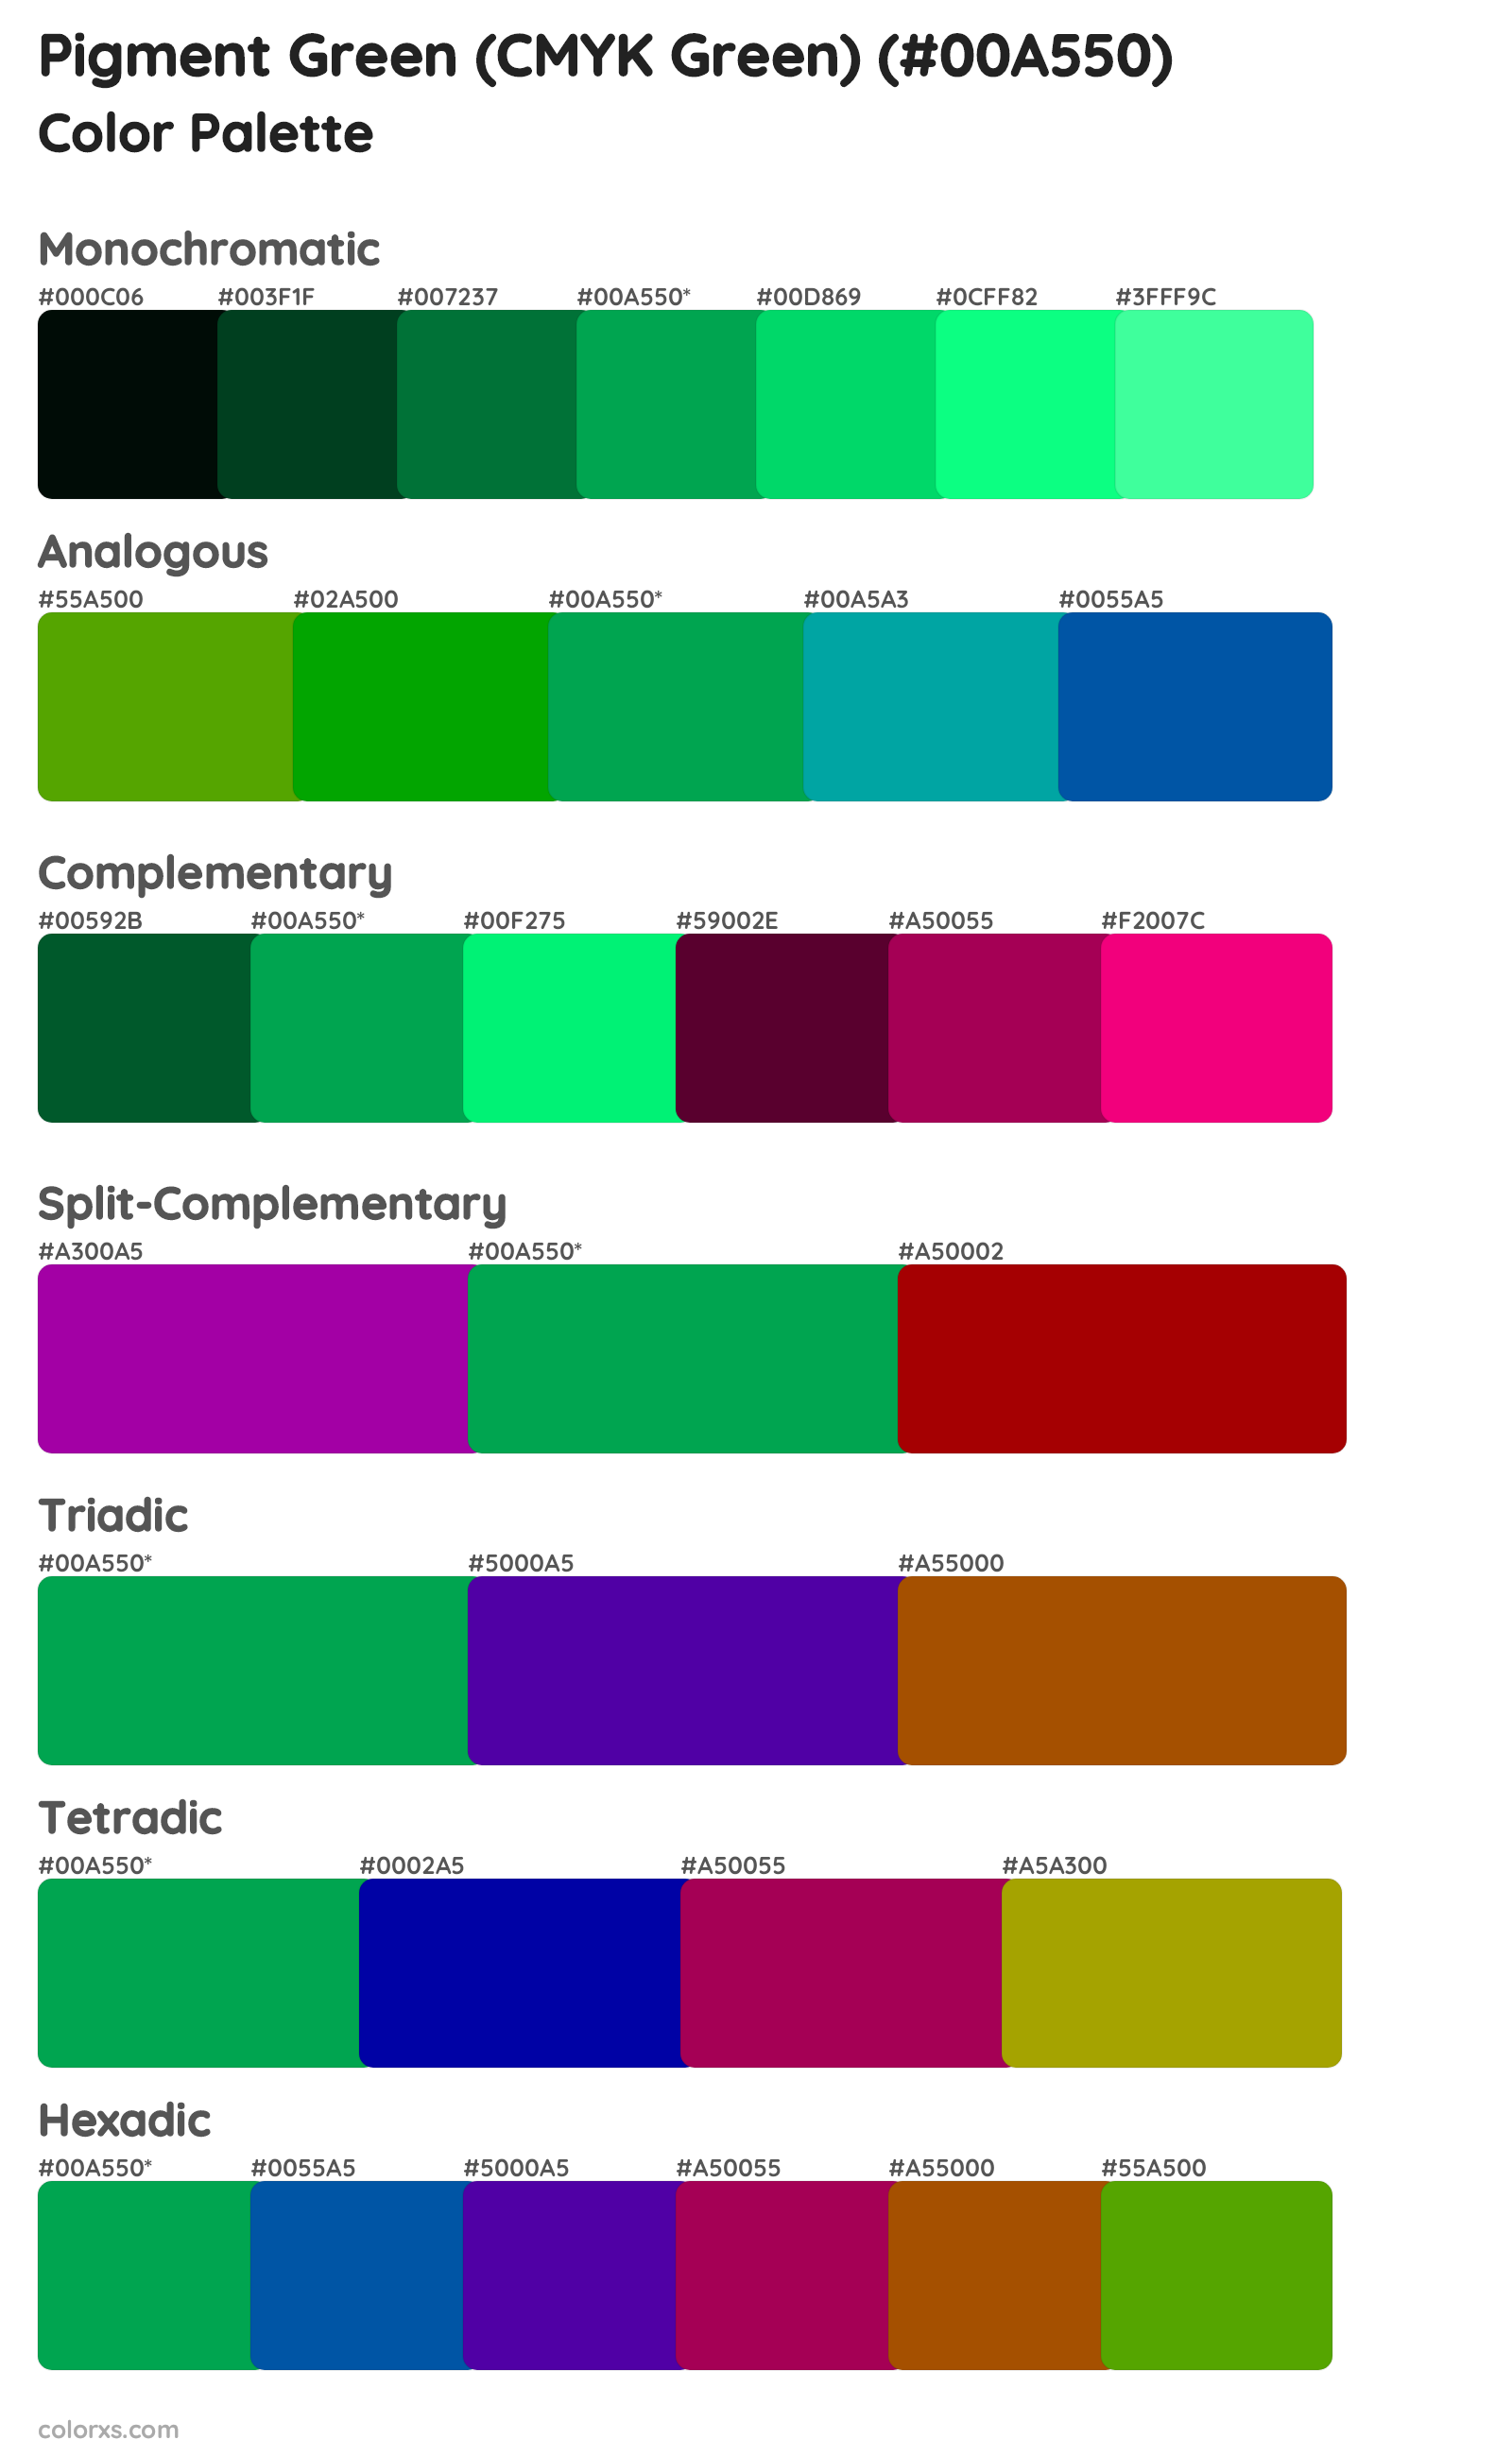 Pigment Green (CMYK Green) Color Scheme Palettes